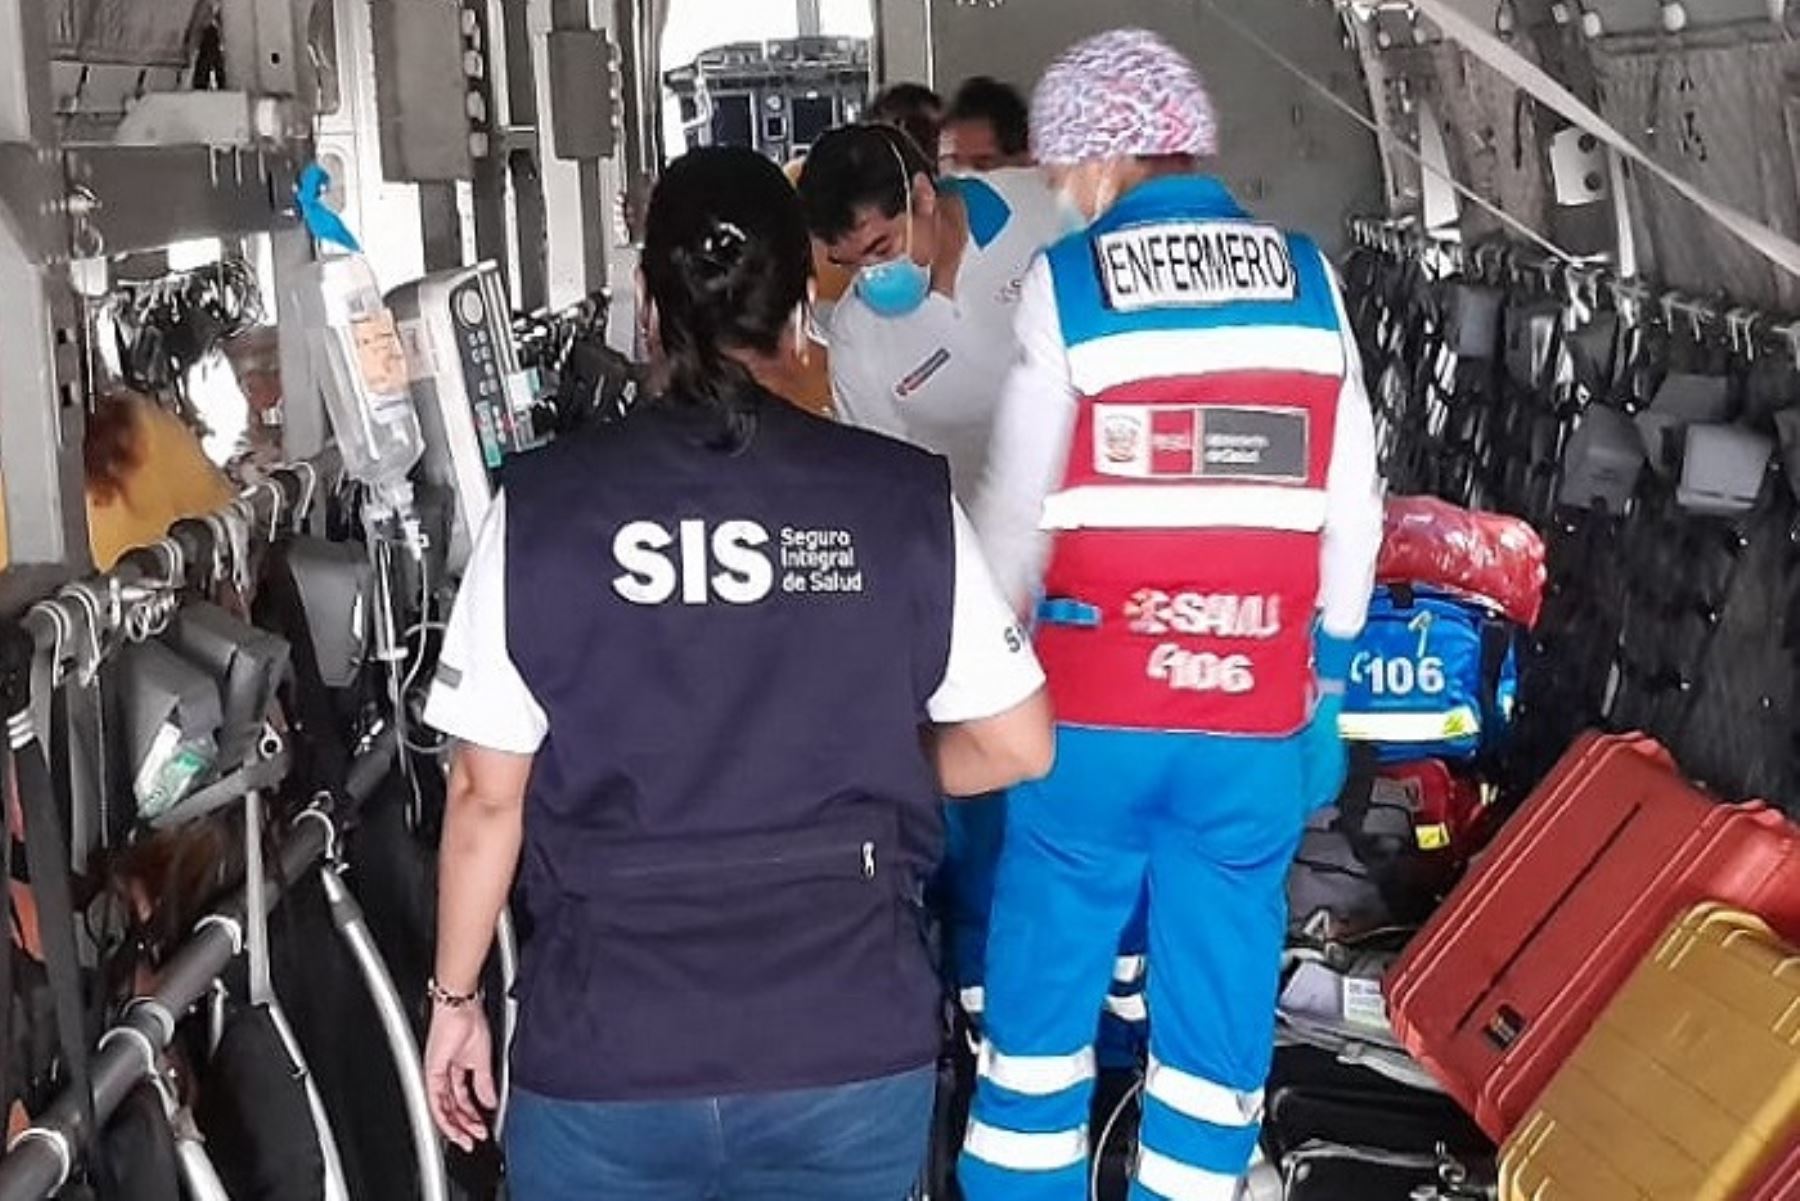 Con estos cuatro pacientes evacuados desde Piura, suman 91 los asegurados de esa región que han salvado sus vidas por los vuelos aeromédicos financiados por el SIS.